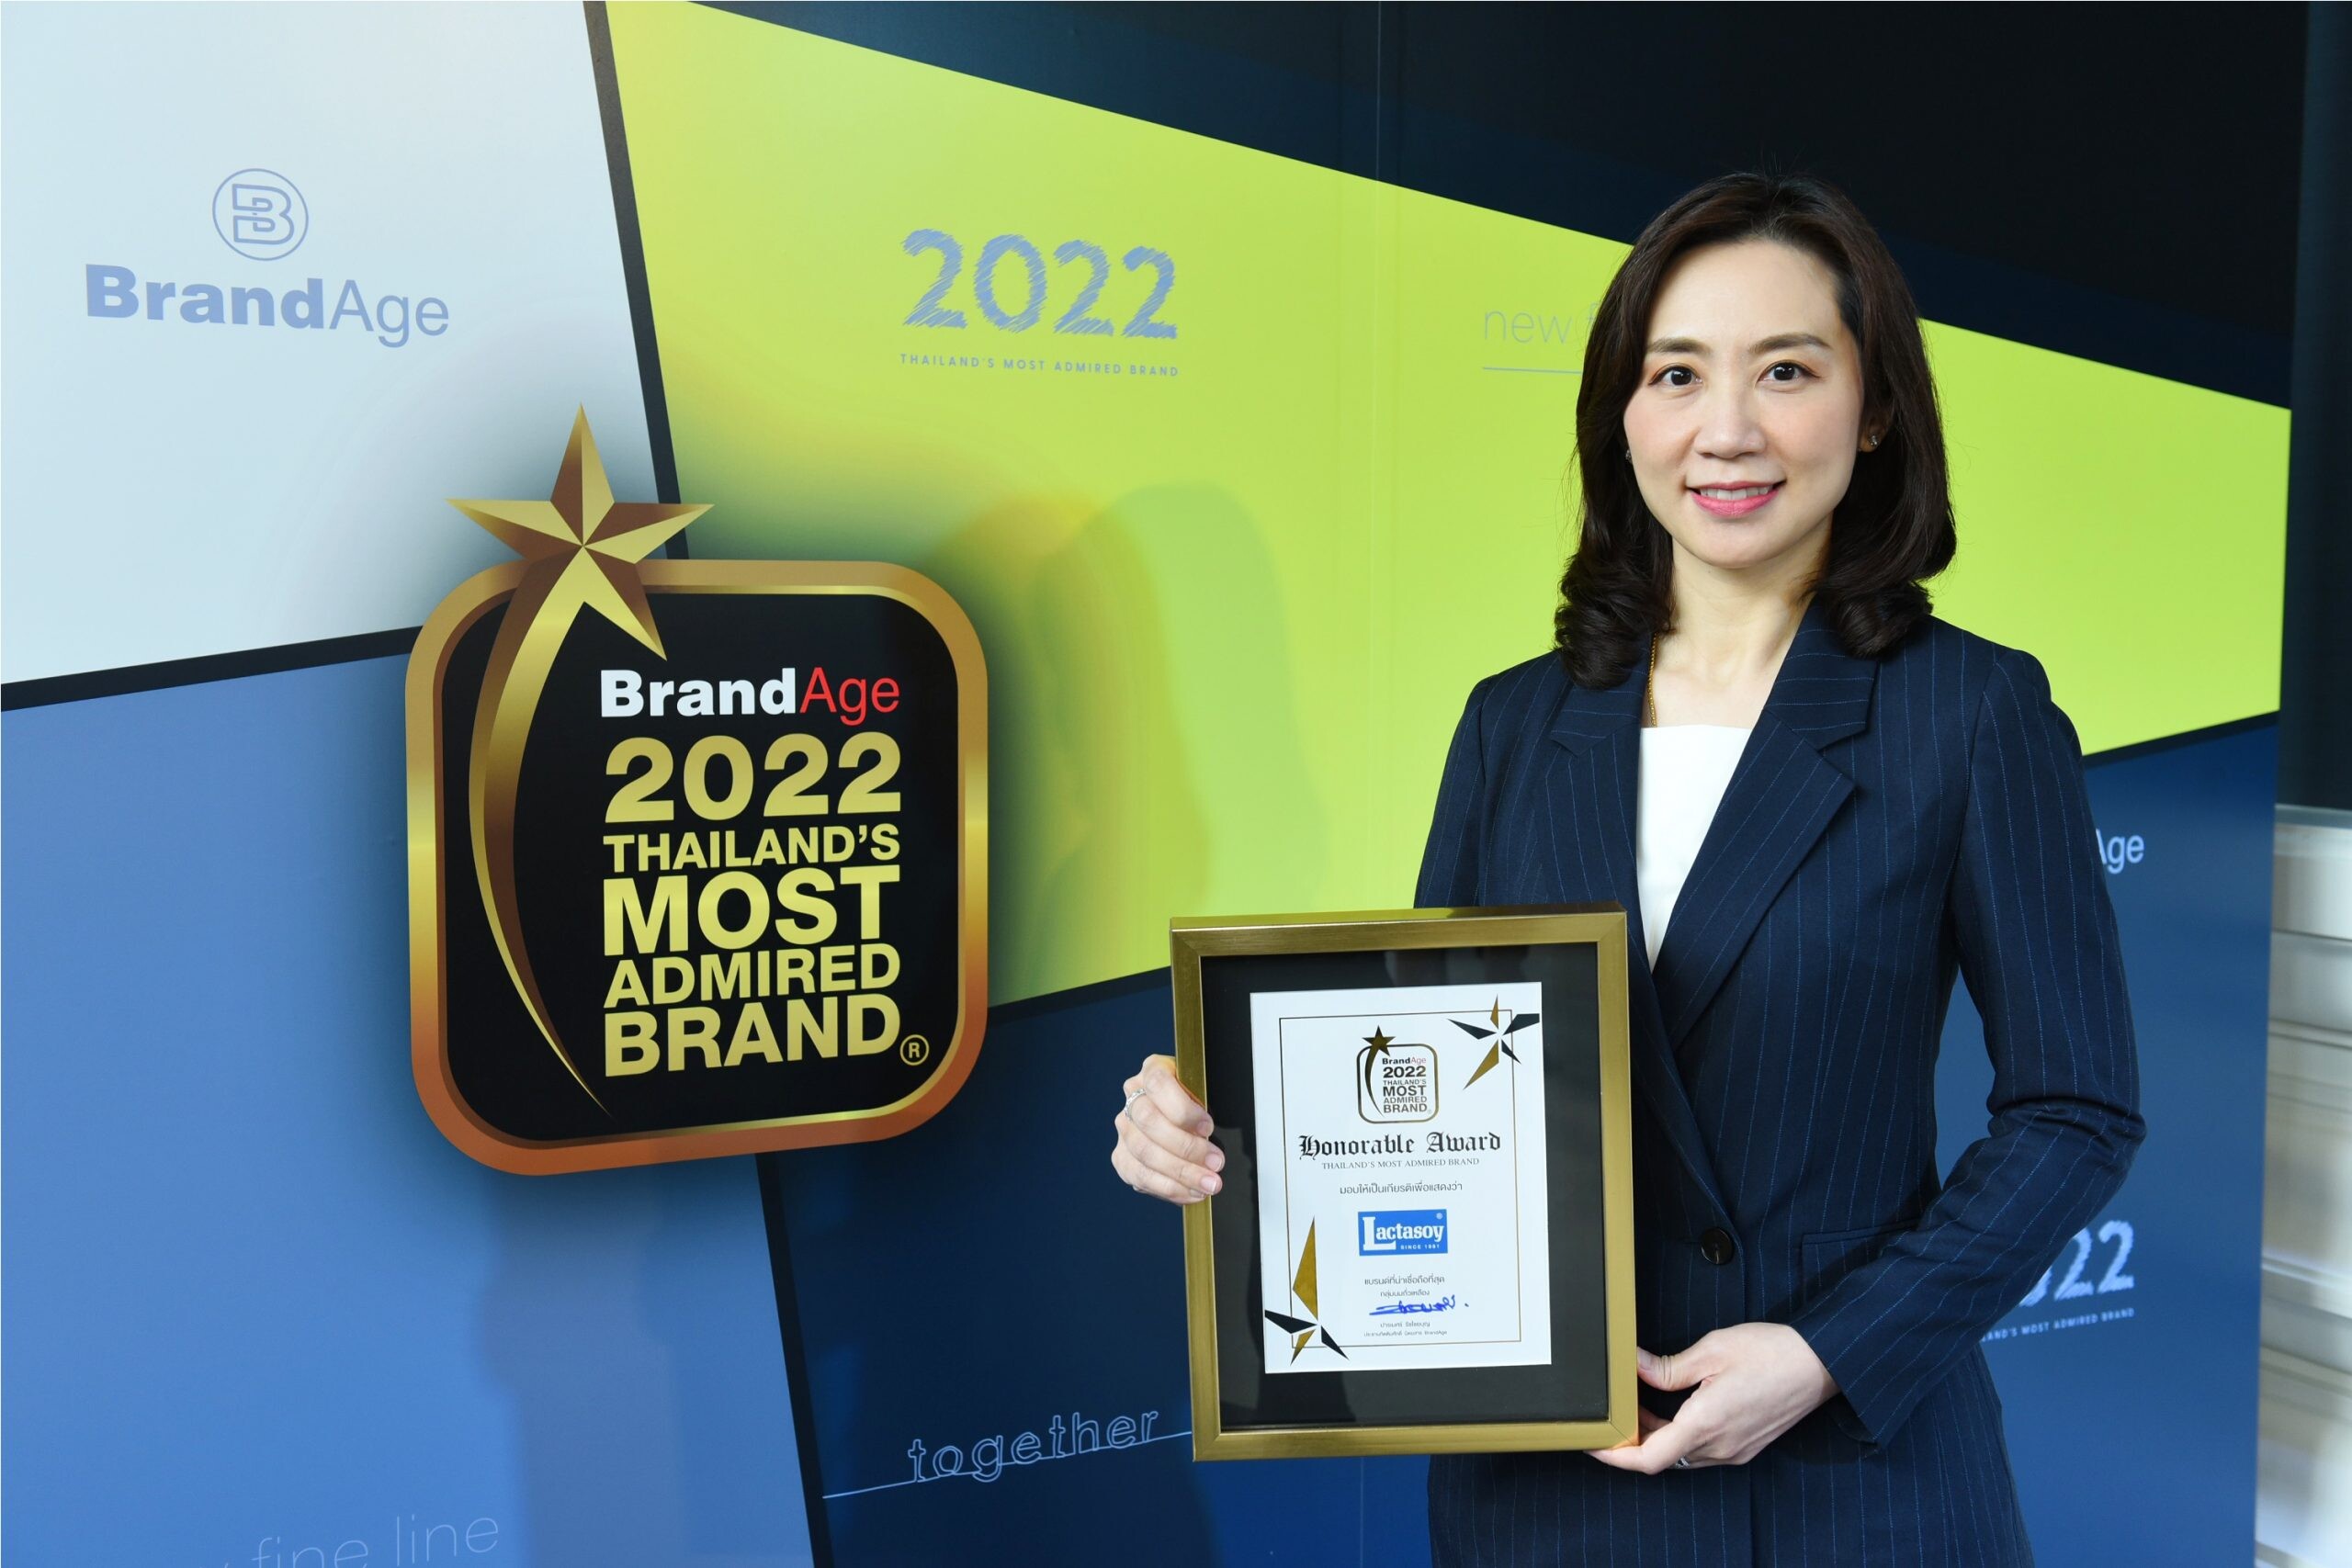 แลคตาซอย ครองบัลลังก์แบรนด์นมถั่วเหลืองที่หนึ่งในใจผู้บริโภค การันตีด้วยรางวัลล่าสุด "2022 Thailand's Most Admired Brand"